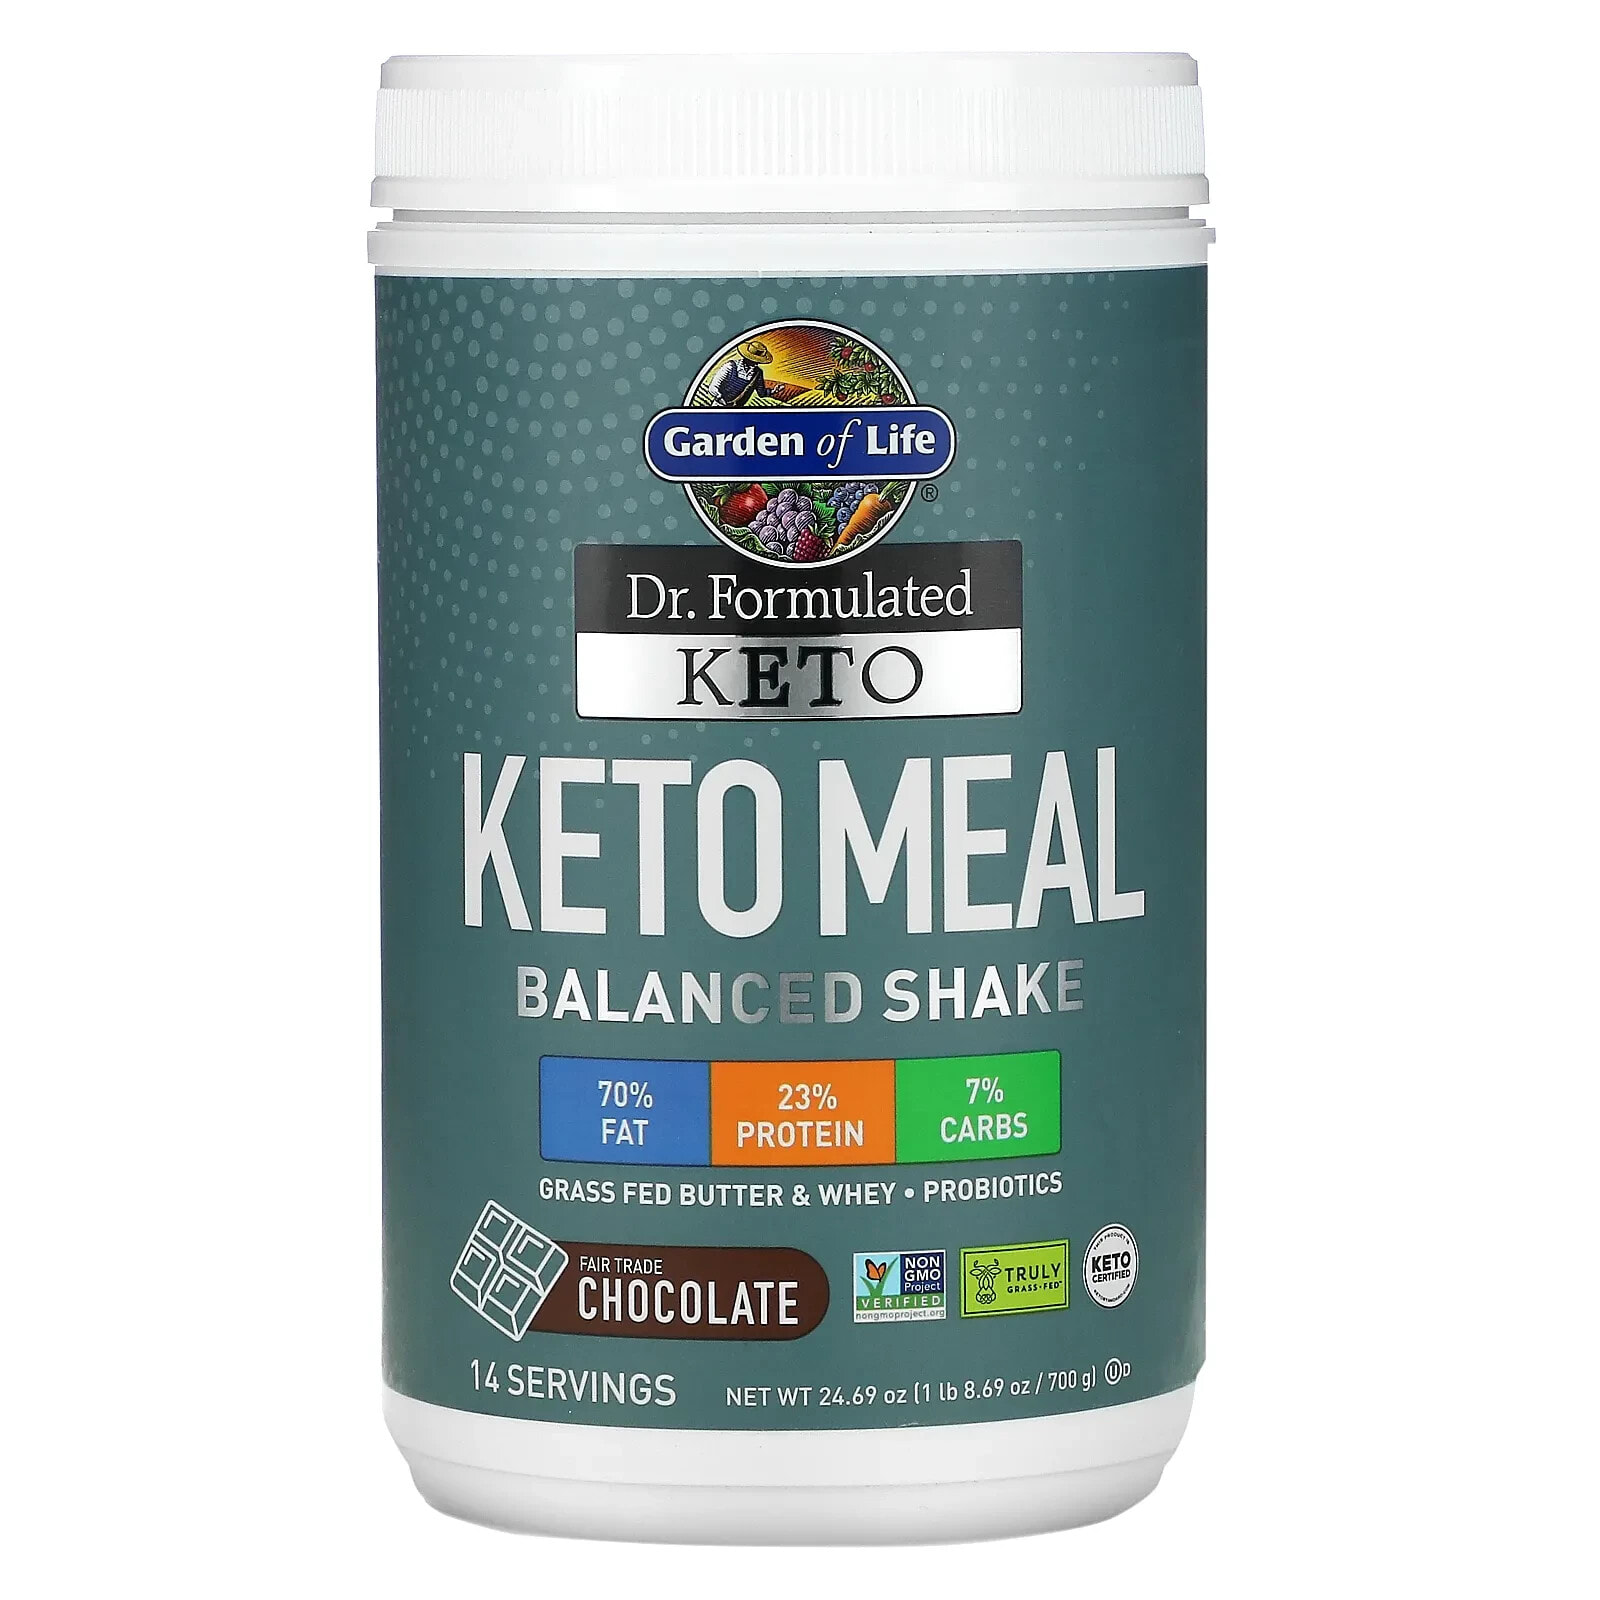 Dr. Formulated Keto Meal Balanced Shake, Chocolate, 24.69 oz (700 g)